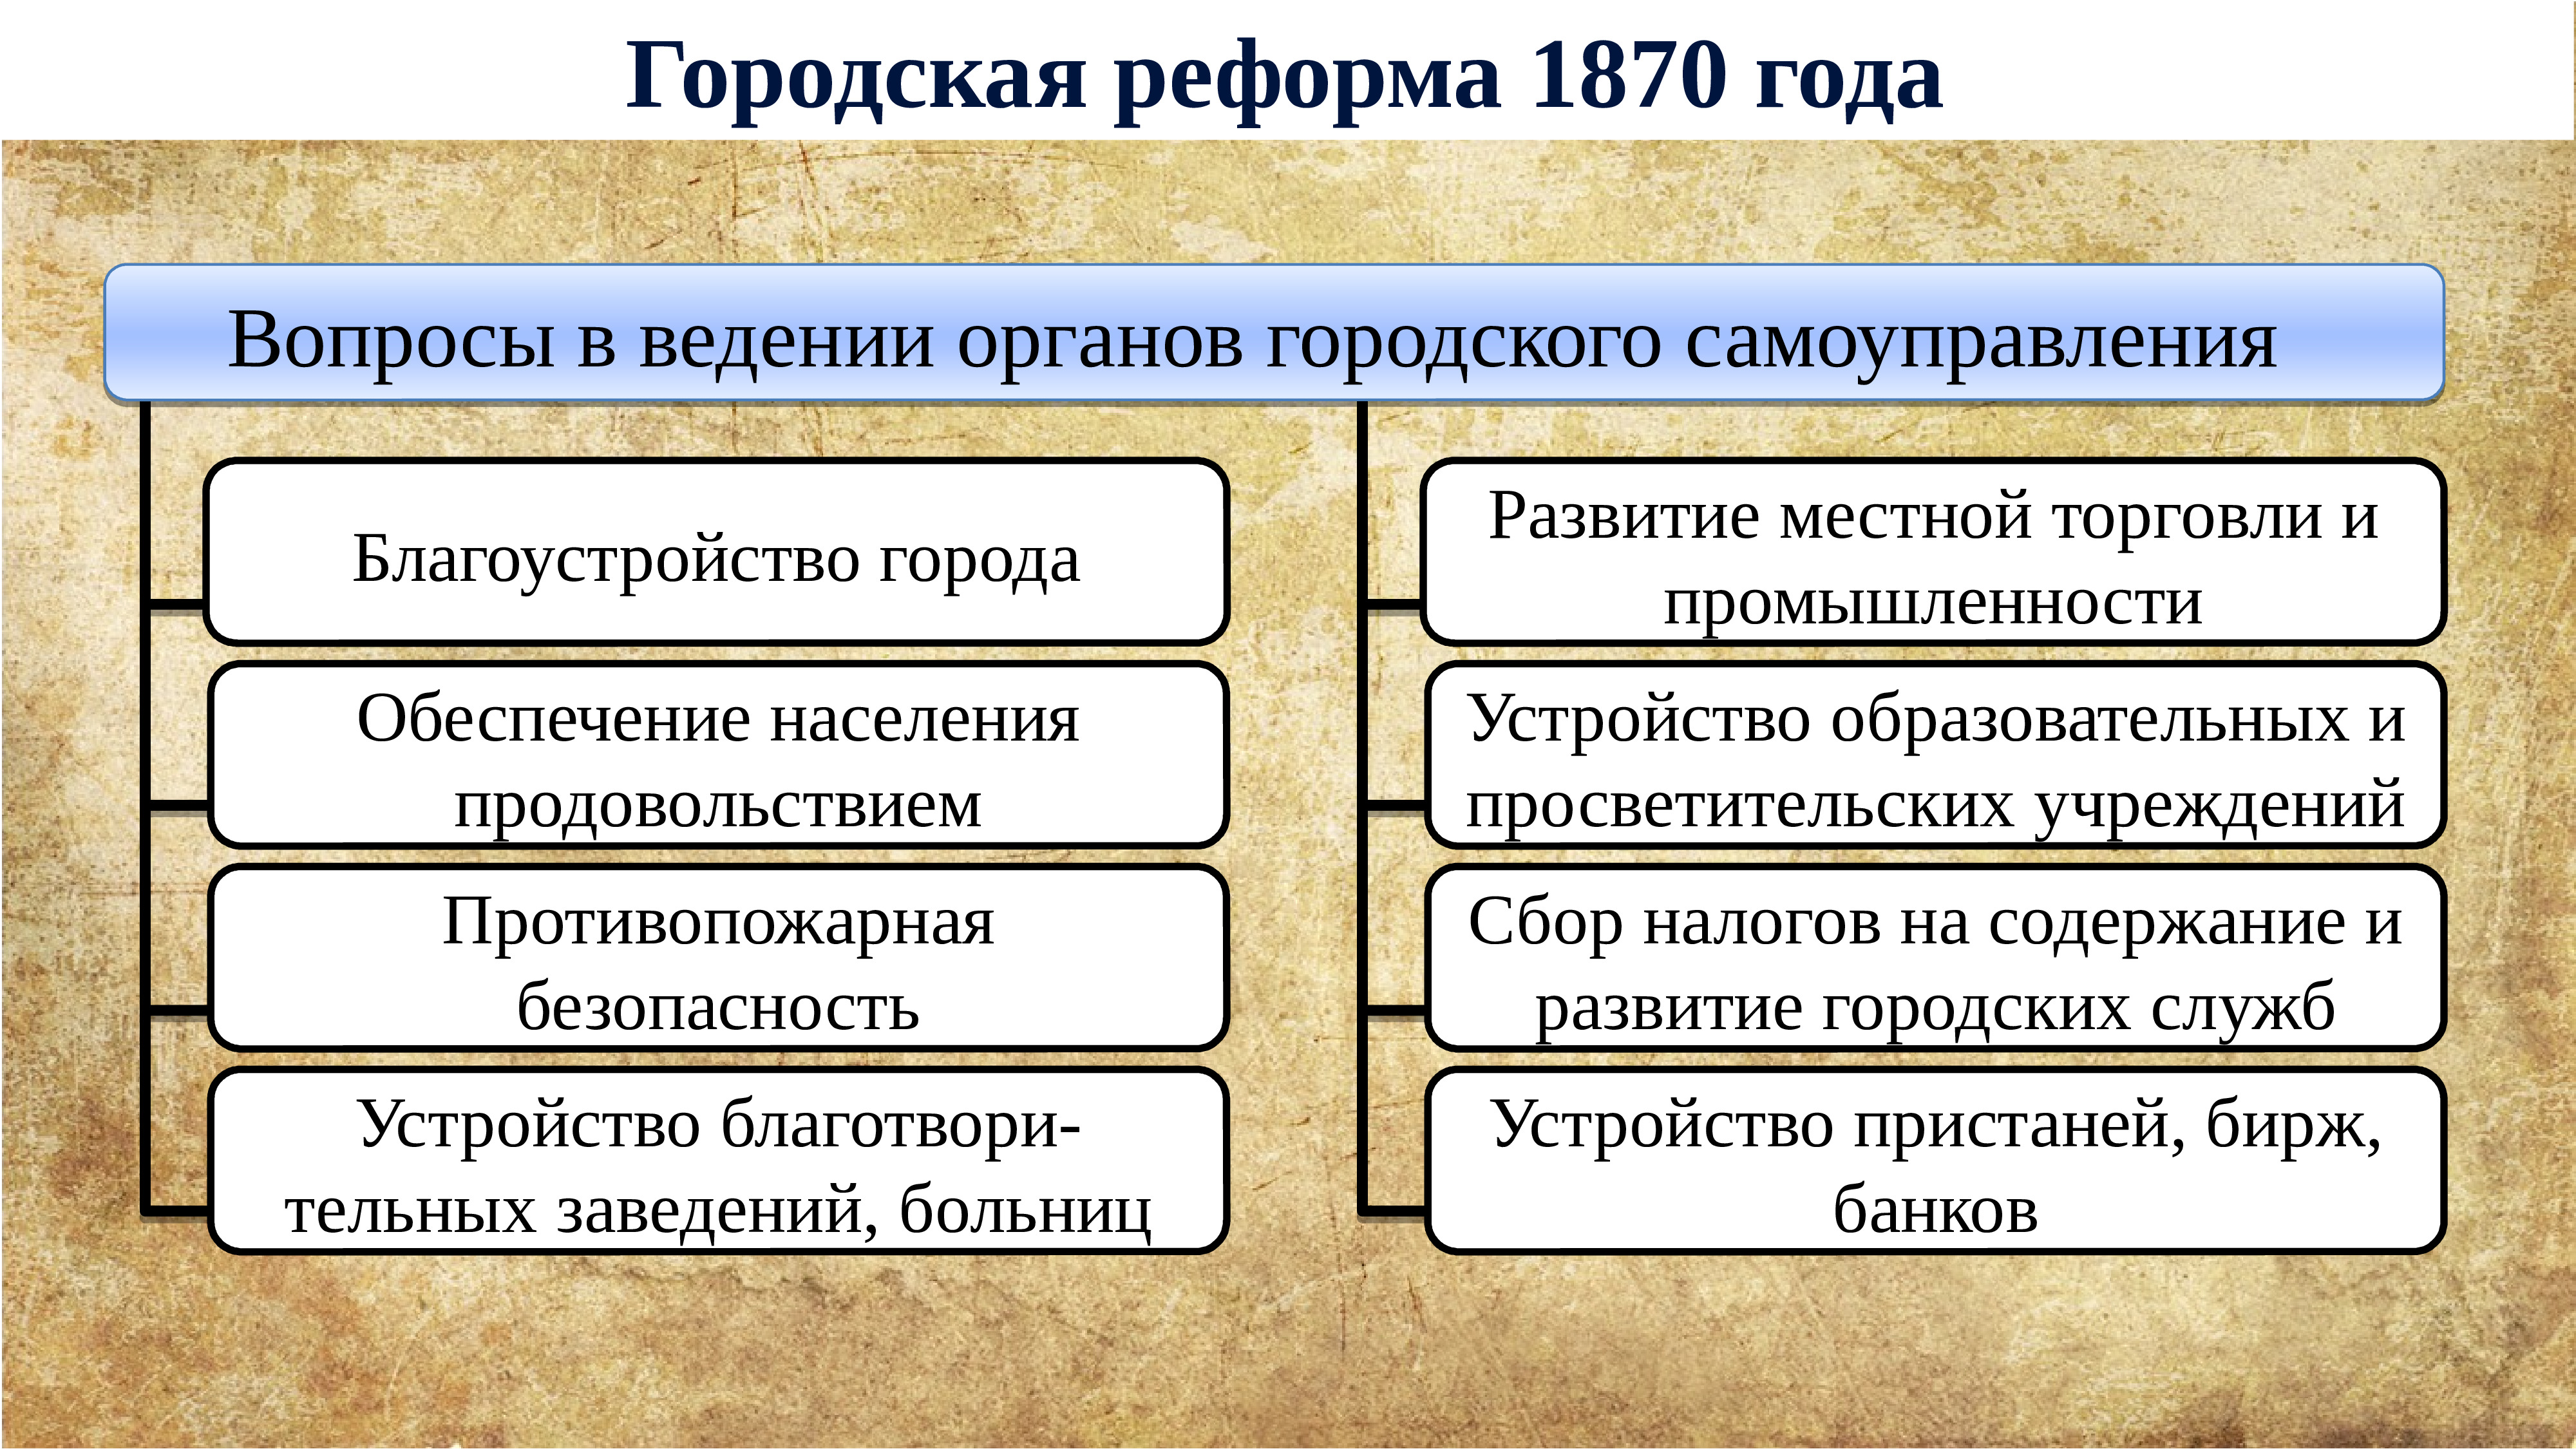 Ограничение службы дворян 25 годами год. Губернская реформа 1860-1870. Внутренняя политика Екатерины 2.